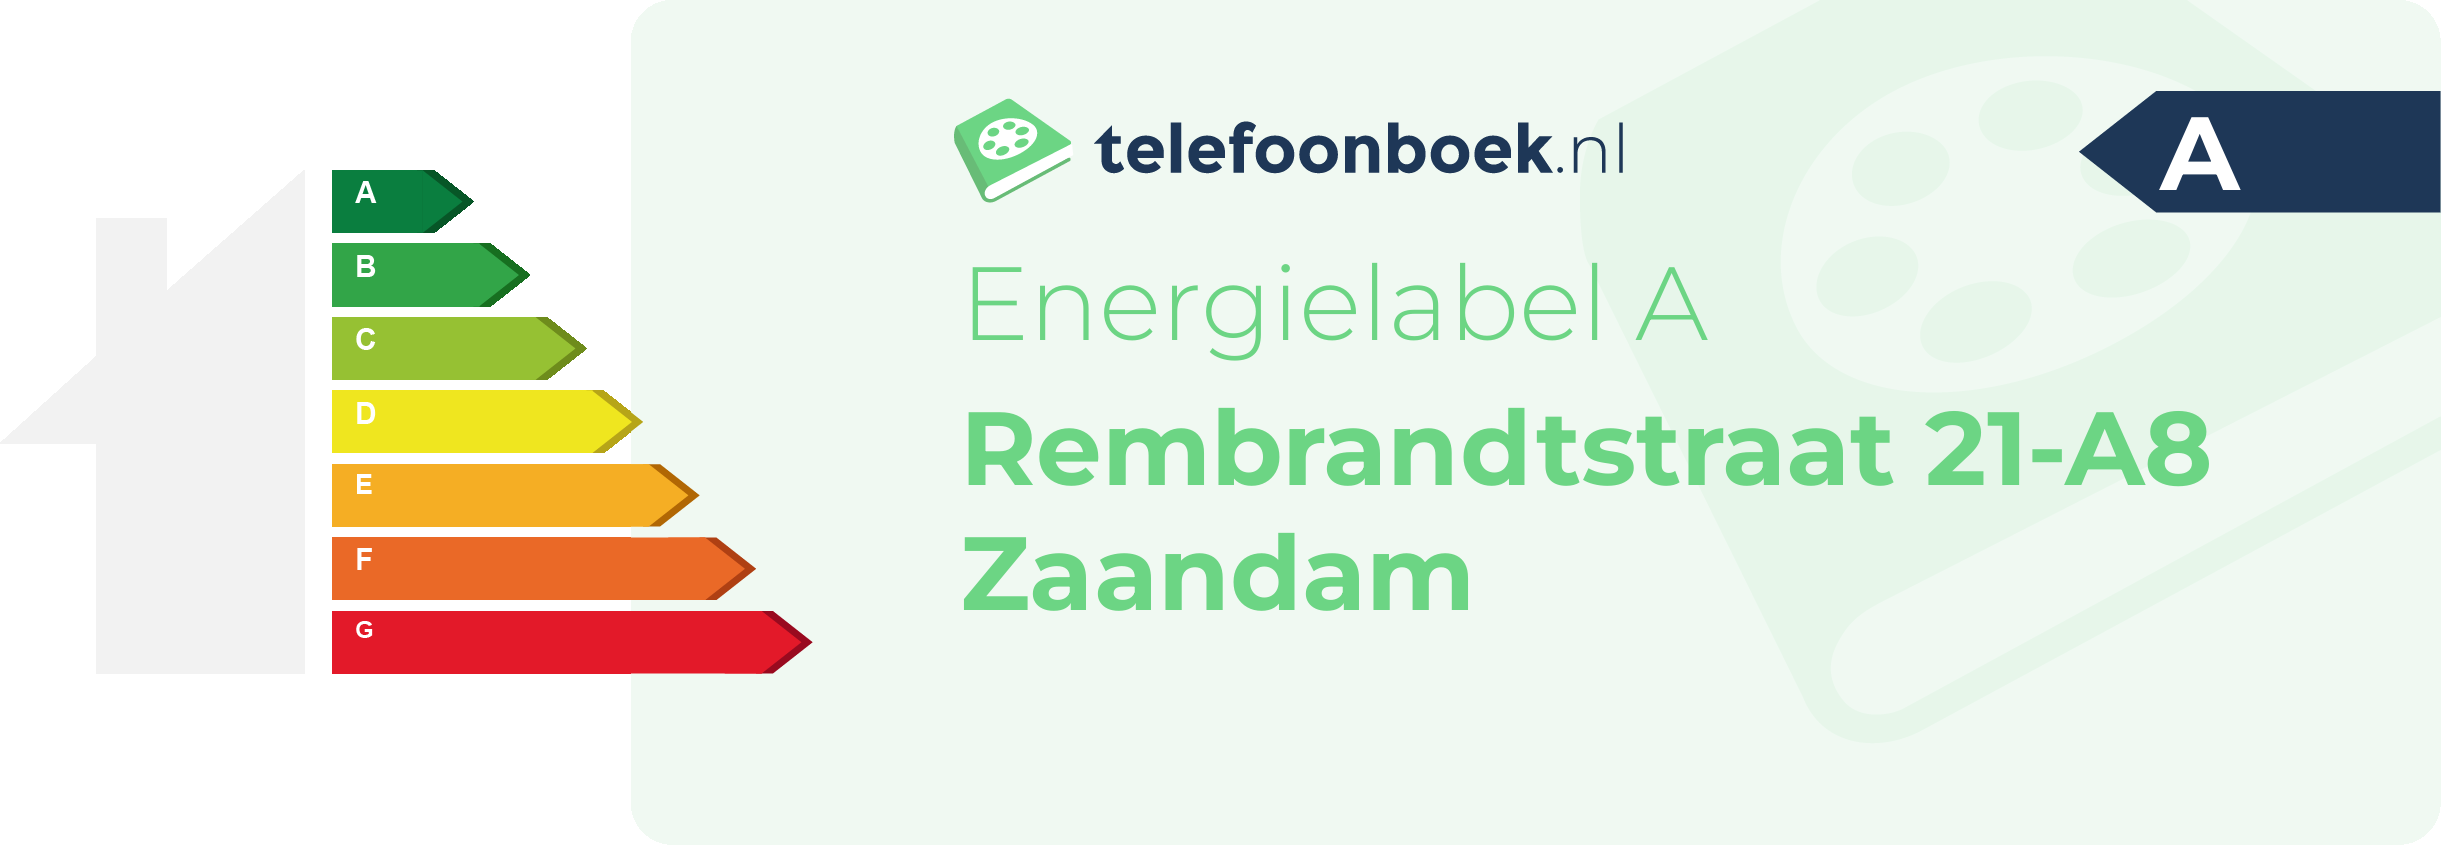 Energielabel Rembrandtstraat 21-A8 Zaandam